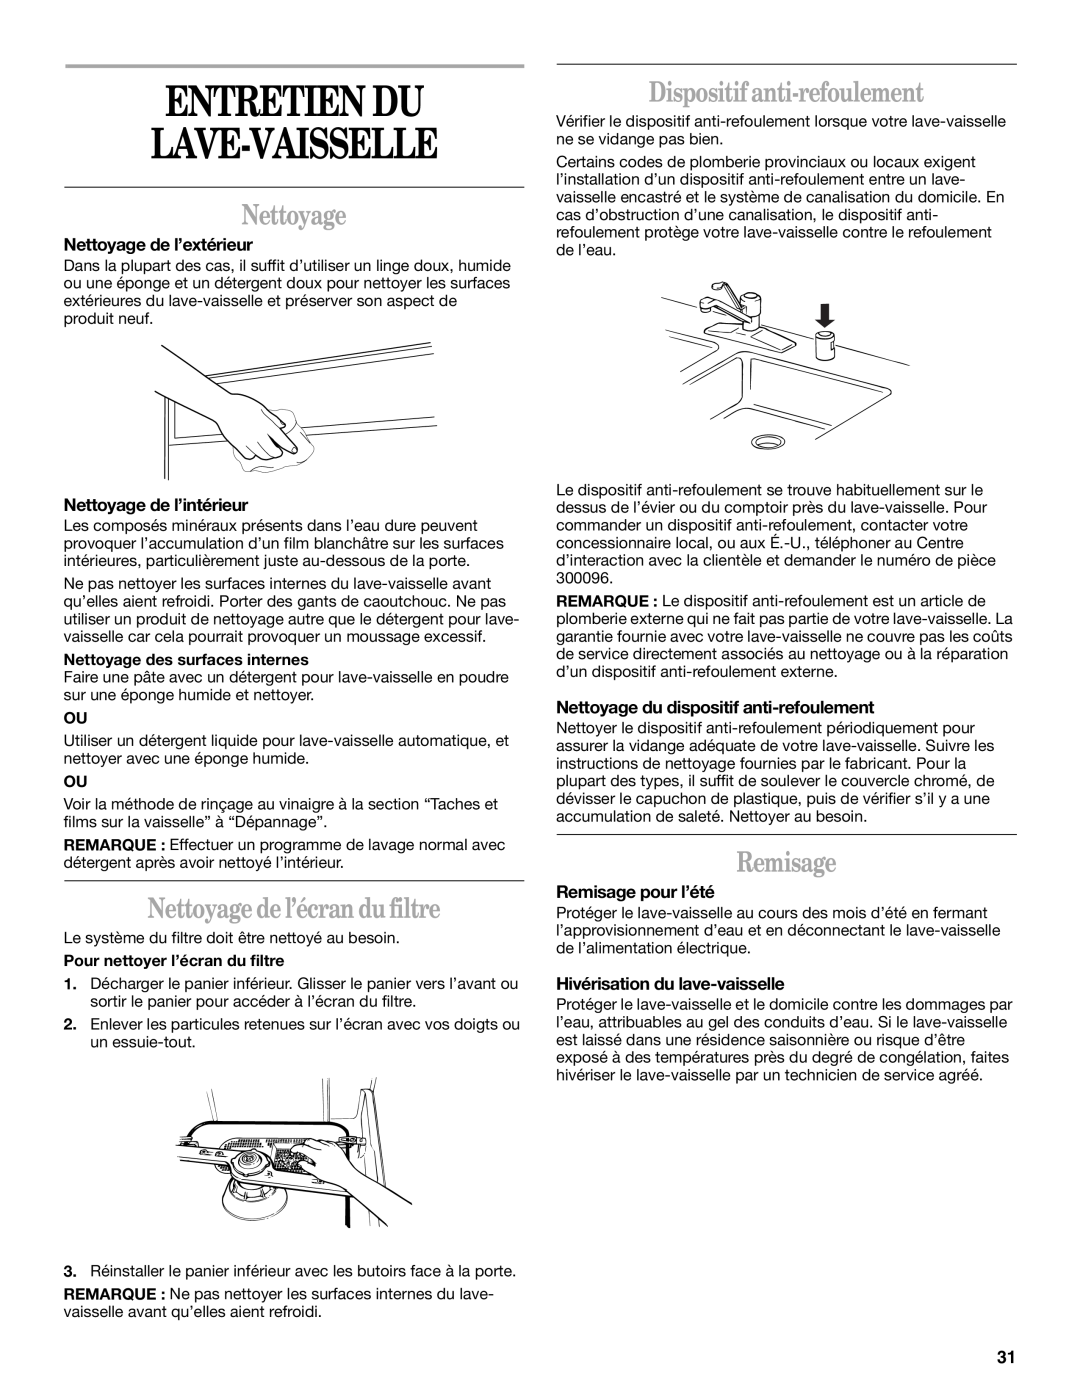 Whirlpool Series 810 manual Entretien Du Lave-Vaisselle, Nettoyage de l’écran du filtre, Dispositif anti-refoulement 